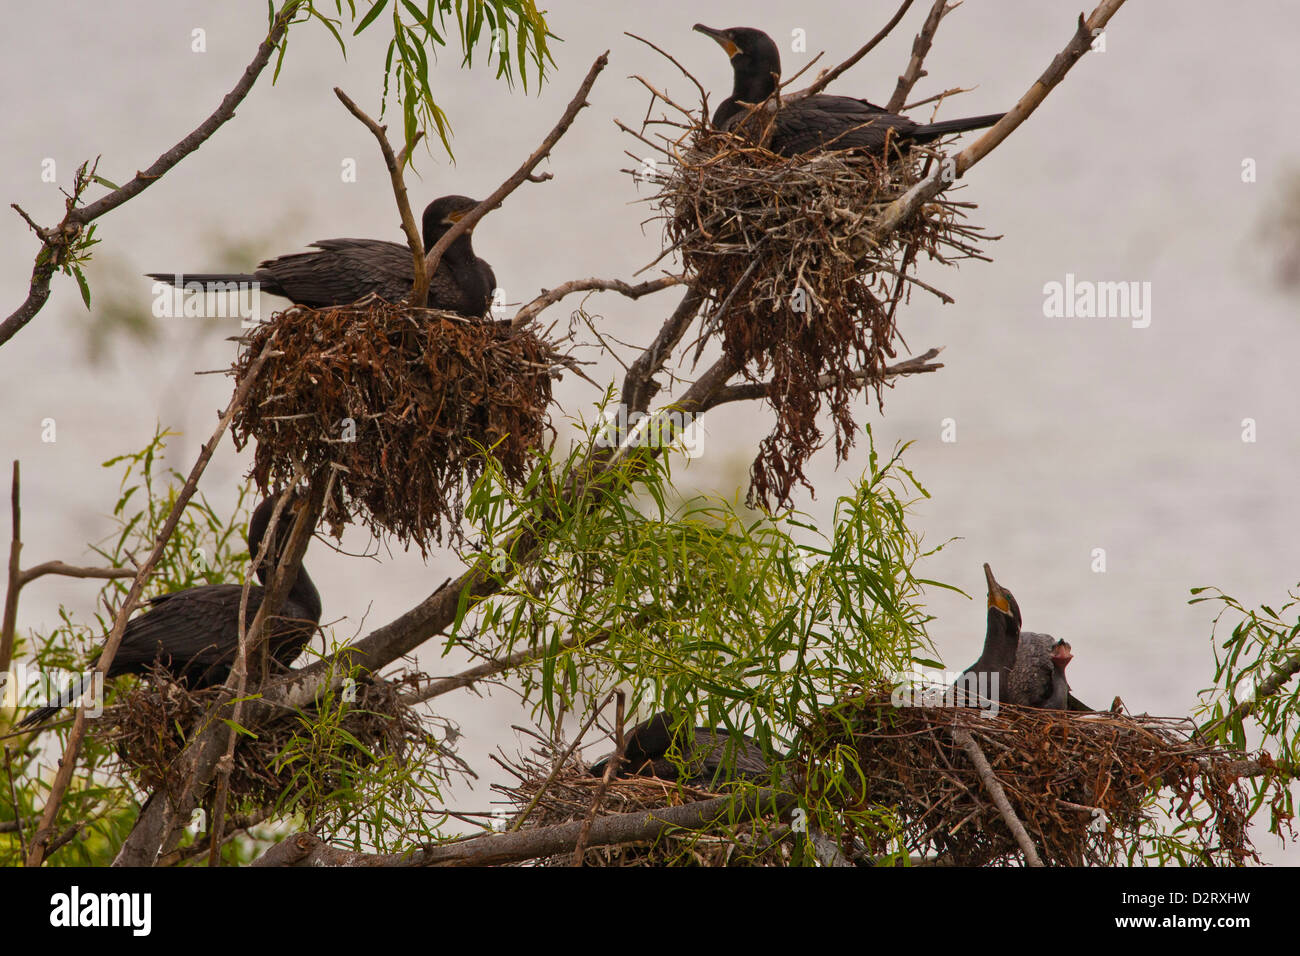 USA, Texas, île haute. La nidification des cormorans à aigrettes. En tant que crédit : Cathy & Gordon Illg / Jaynes Gallery / DanitaDelimont.com Banque D'Images